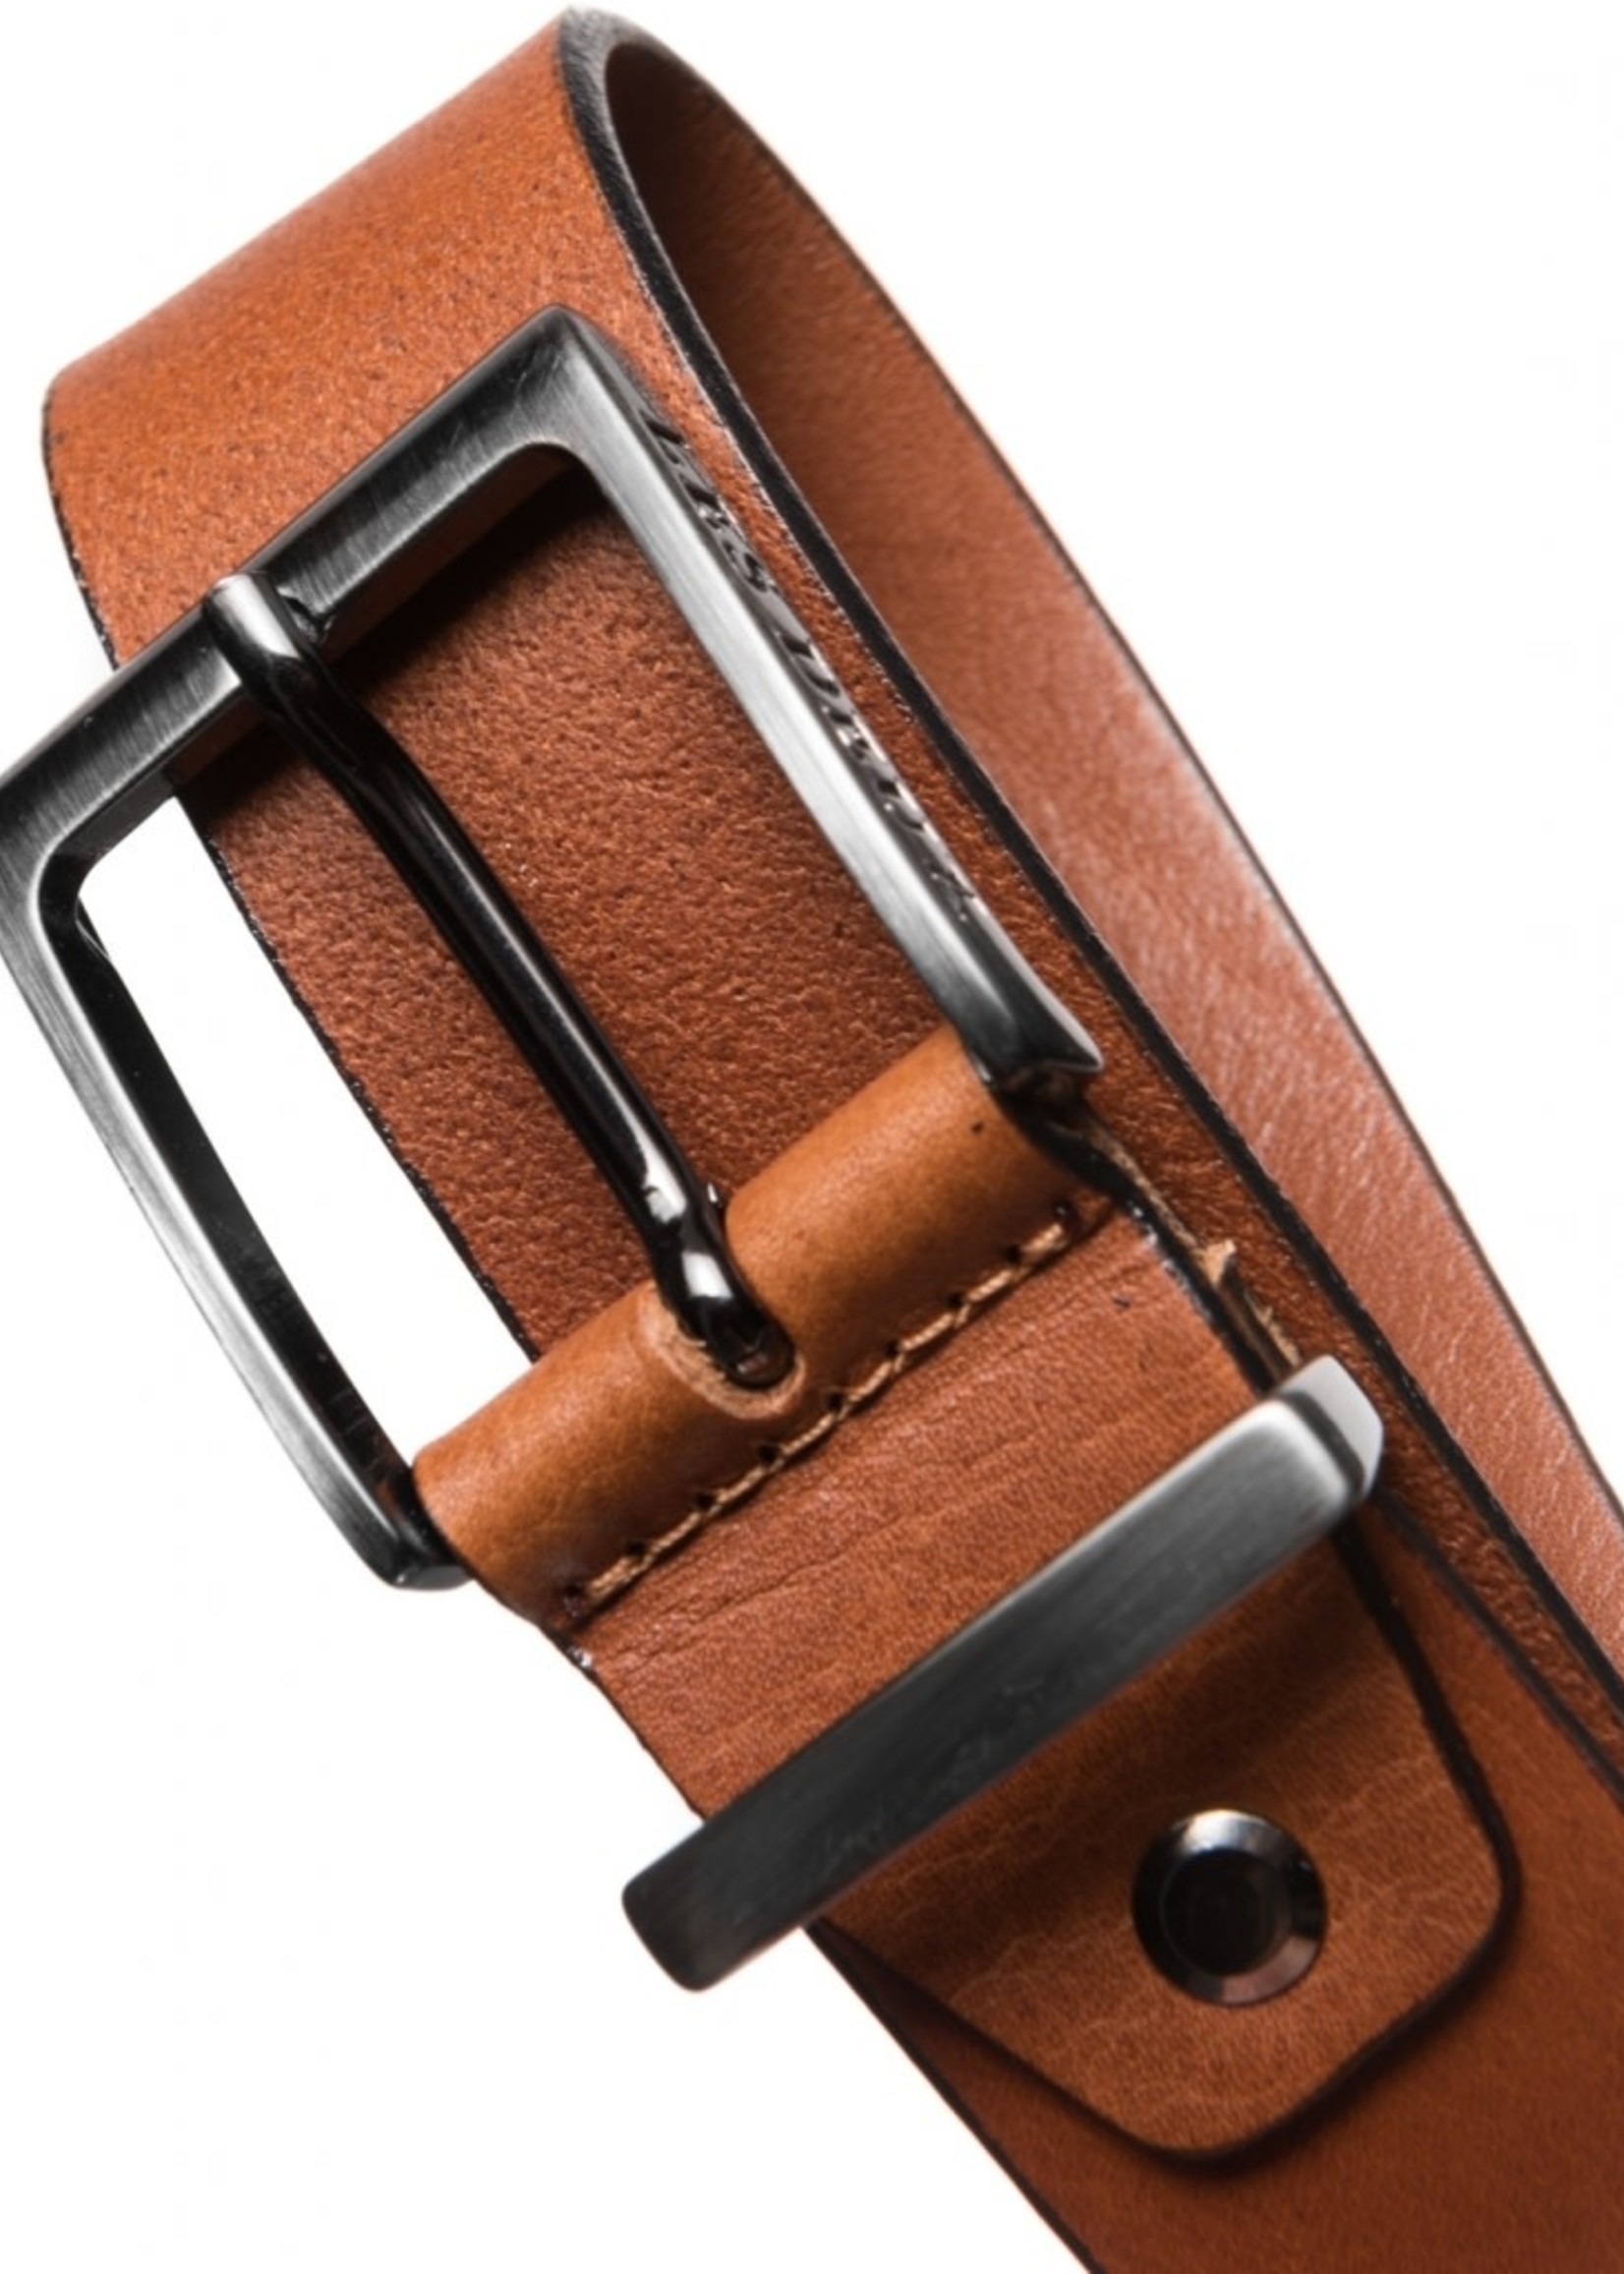 Les Deux Les Deux Walker Leather belt brown